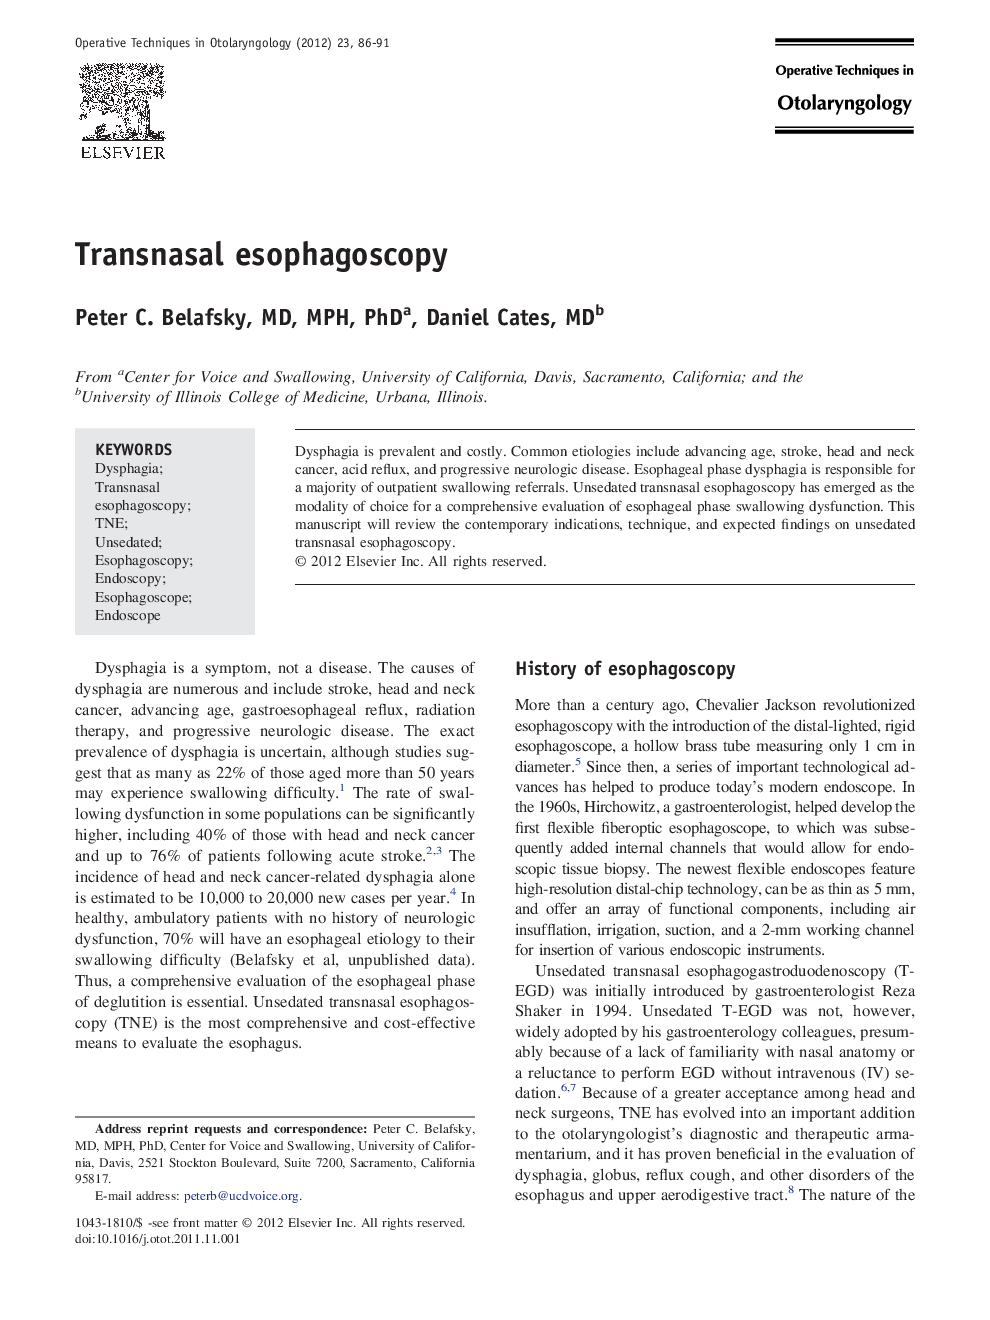 Transnasal esophagoscopy